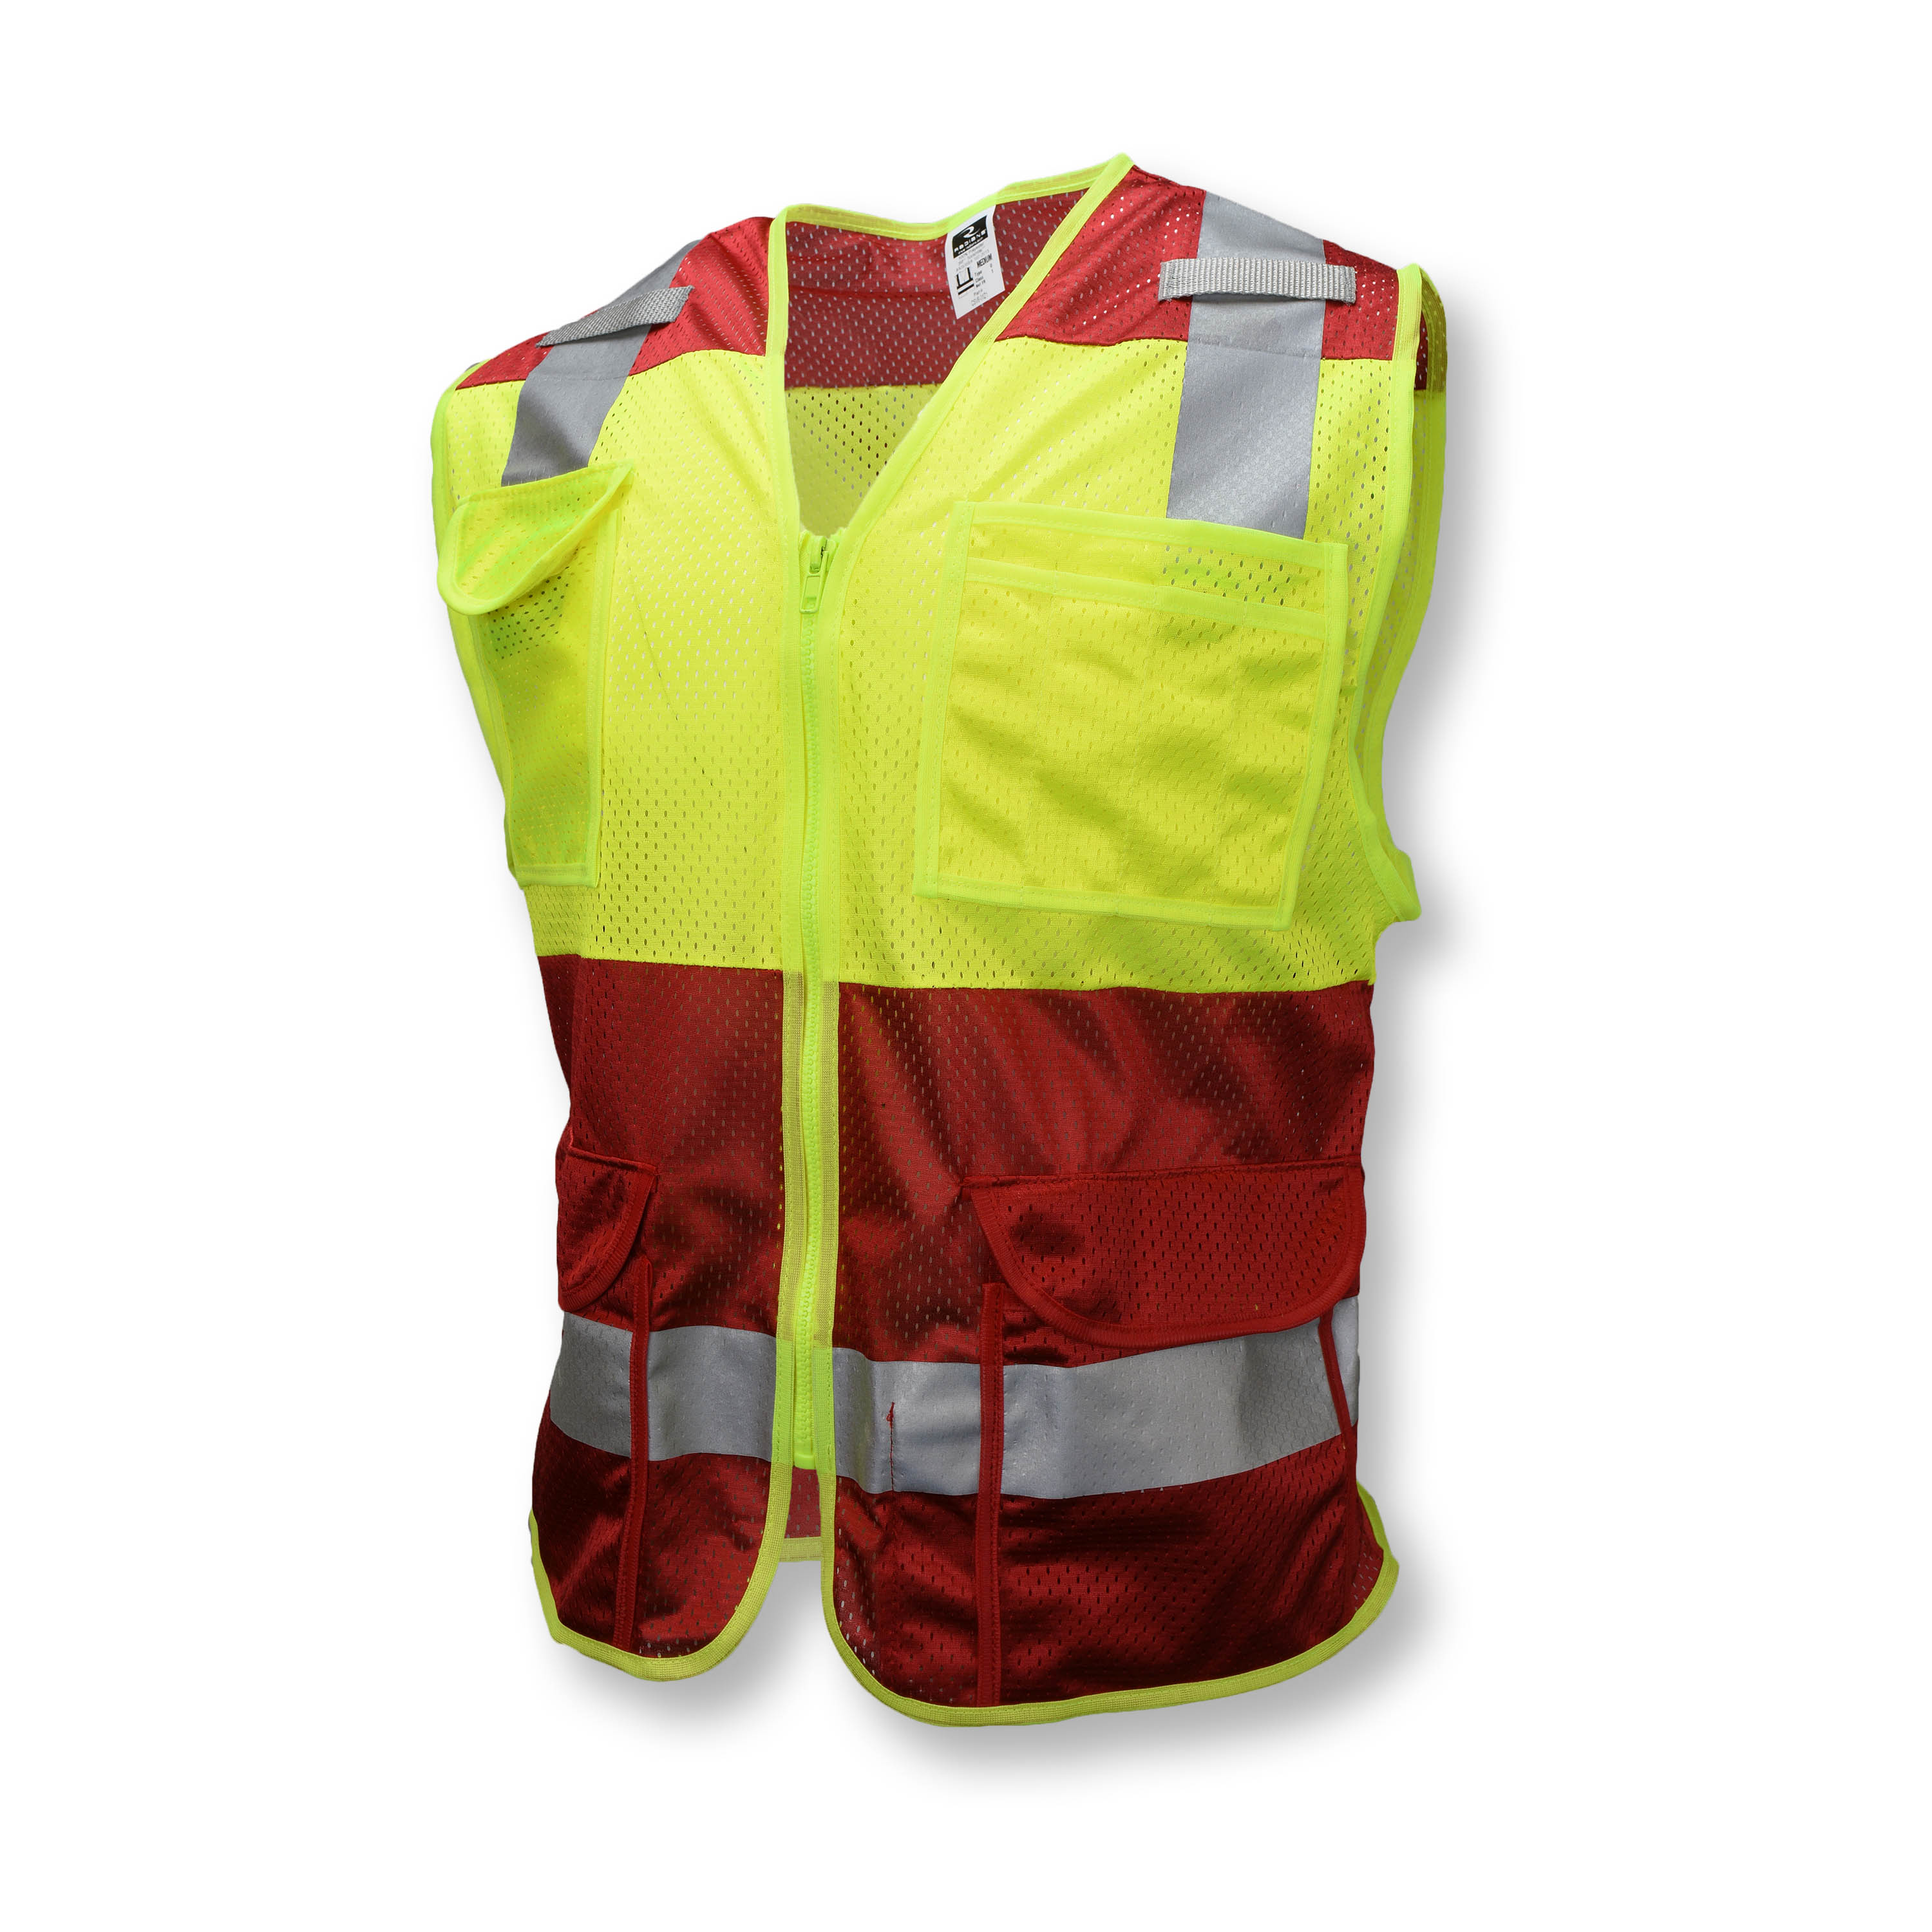 Radians Radwear USA CSV6-01Z1 Custom Safety Vest, Multiple Sizes Available  Western Safety